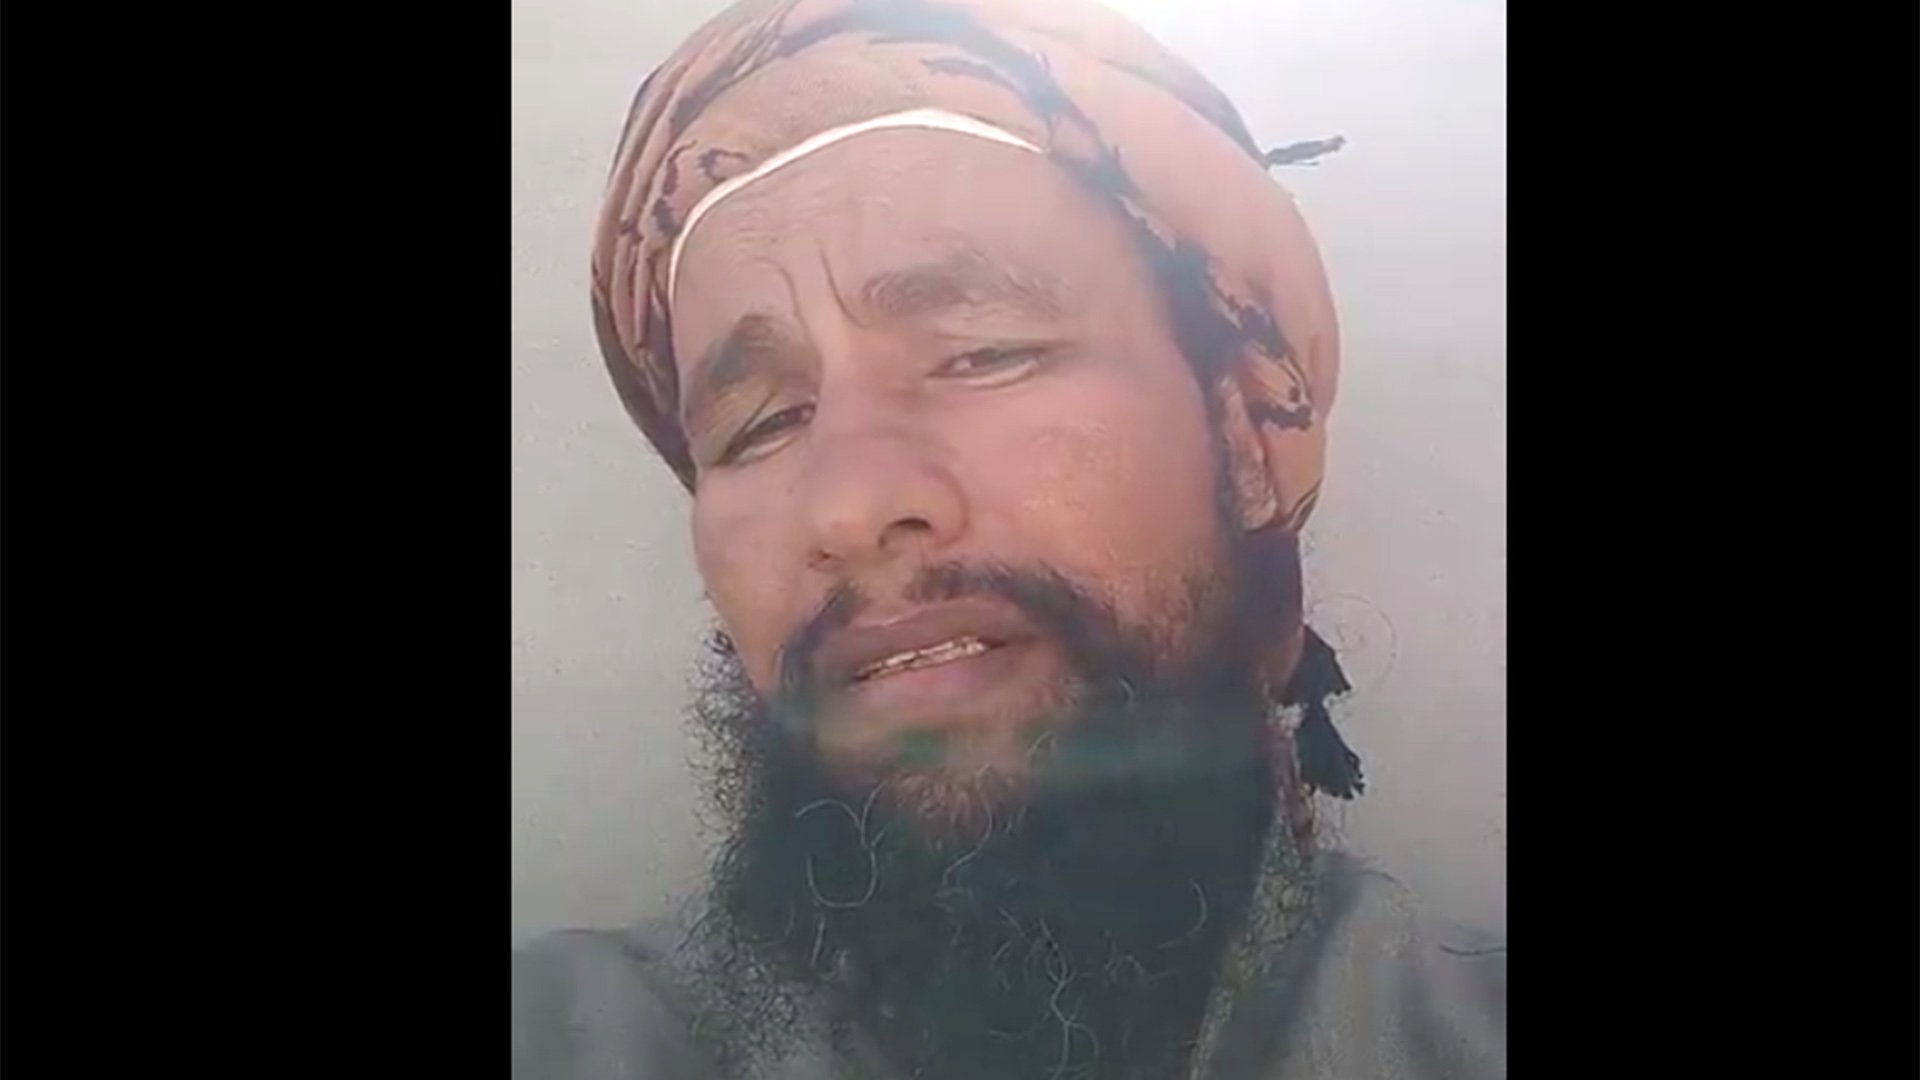 نشر عبد الرحيم الحويطي مقاطع فيديو على الإنترنت يقول فيها إنه يتوقع قتله